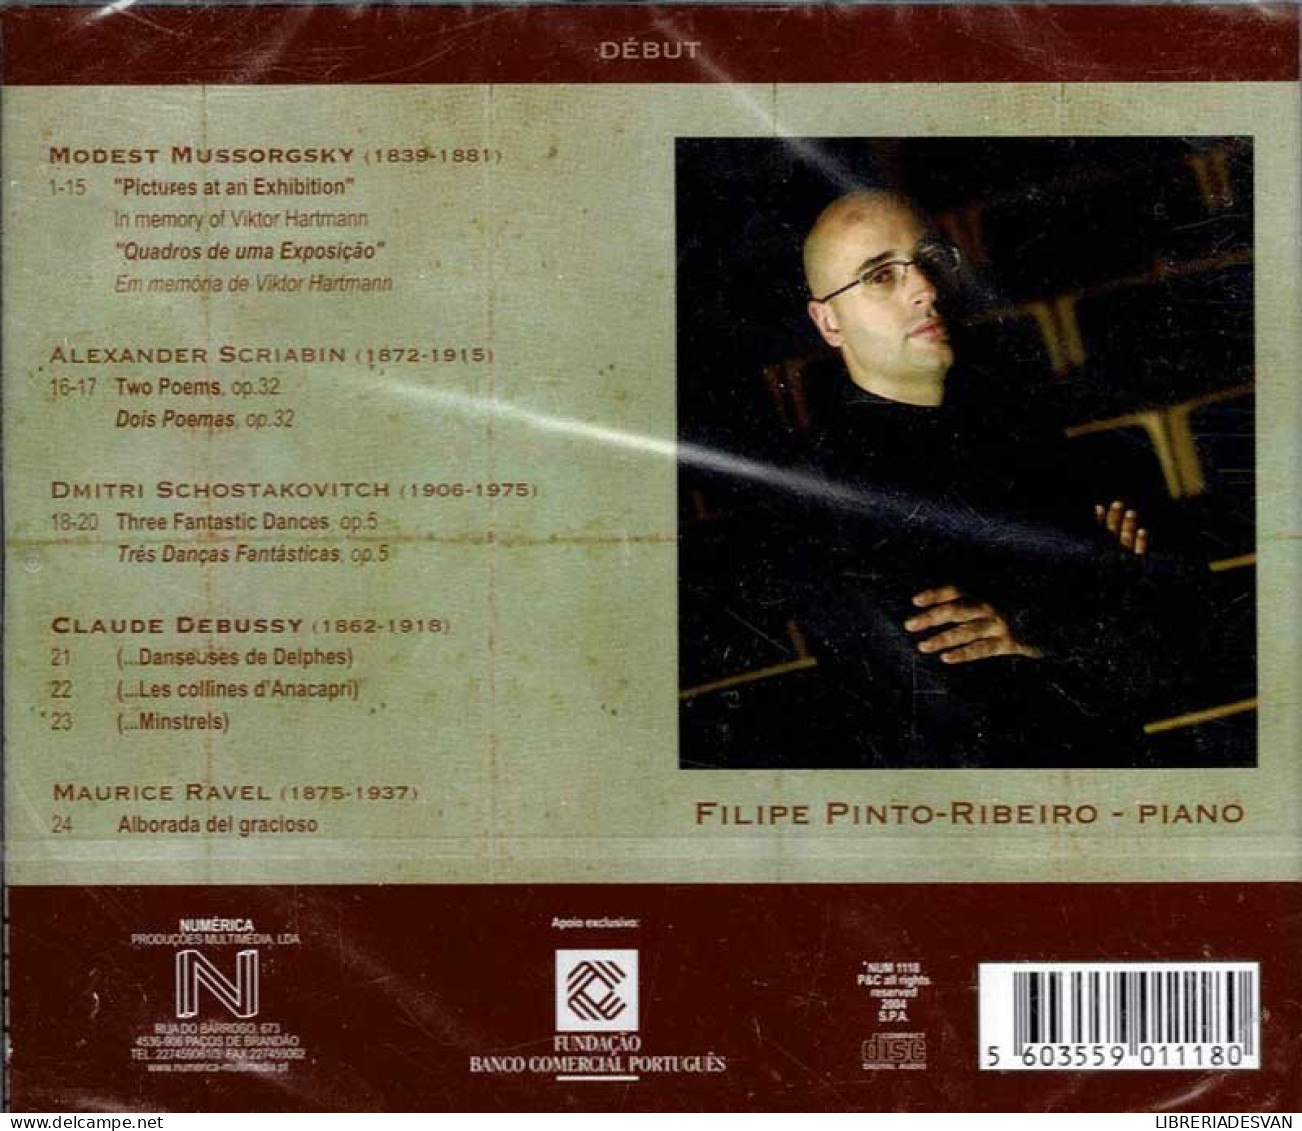 Filipe Pinto-Ribeiro - Début. CD - Klassik